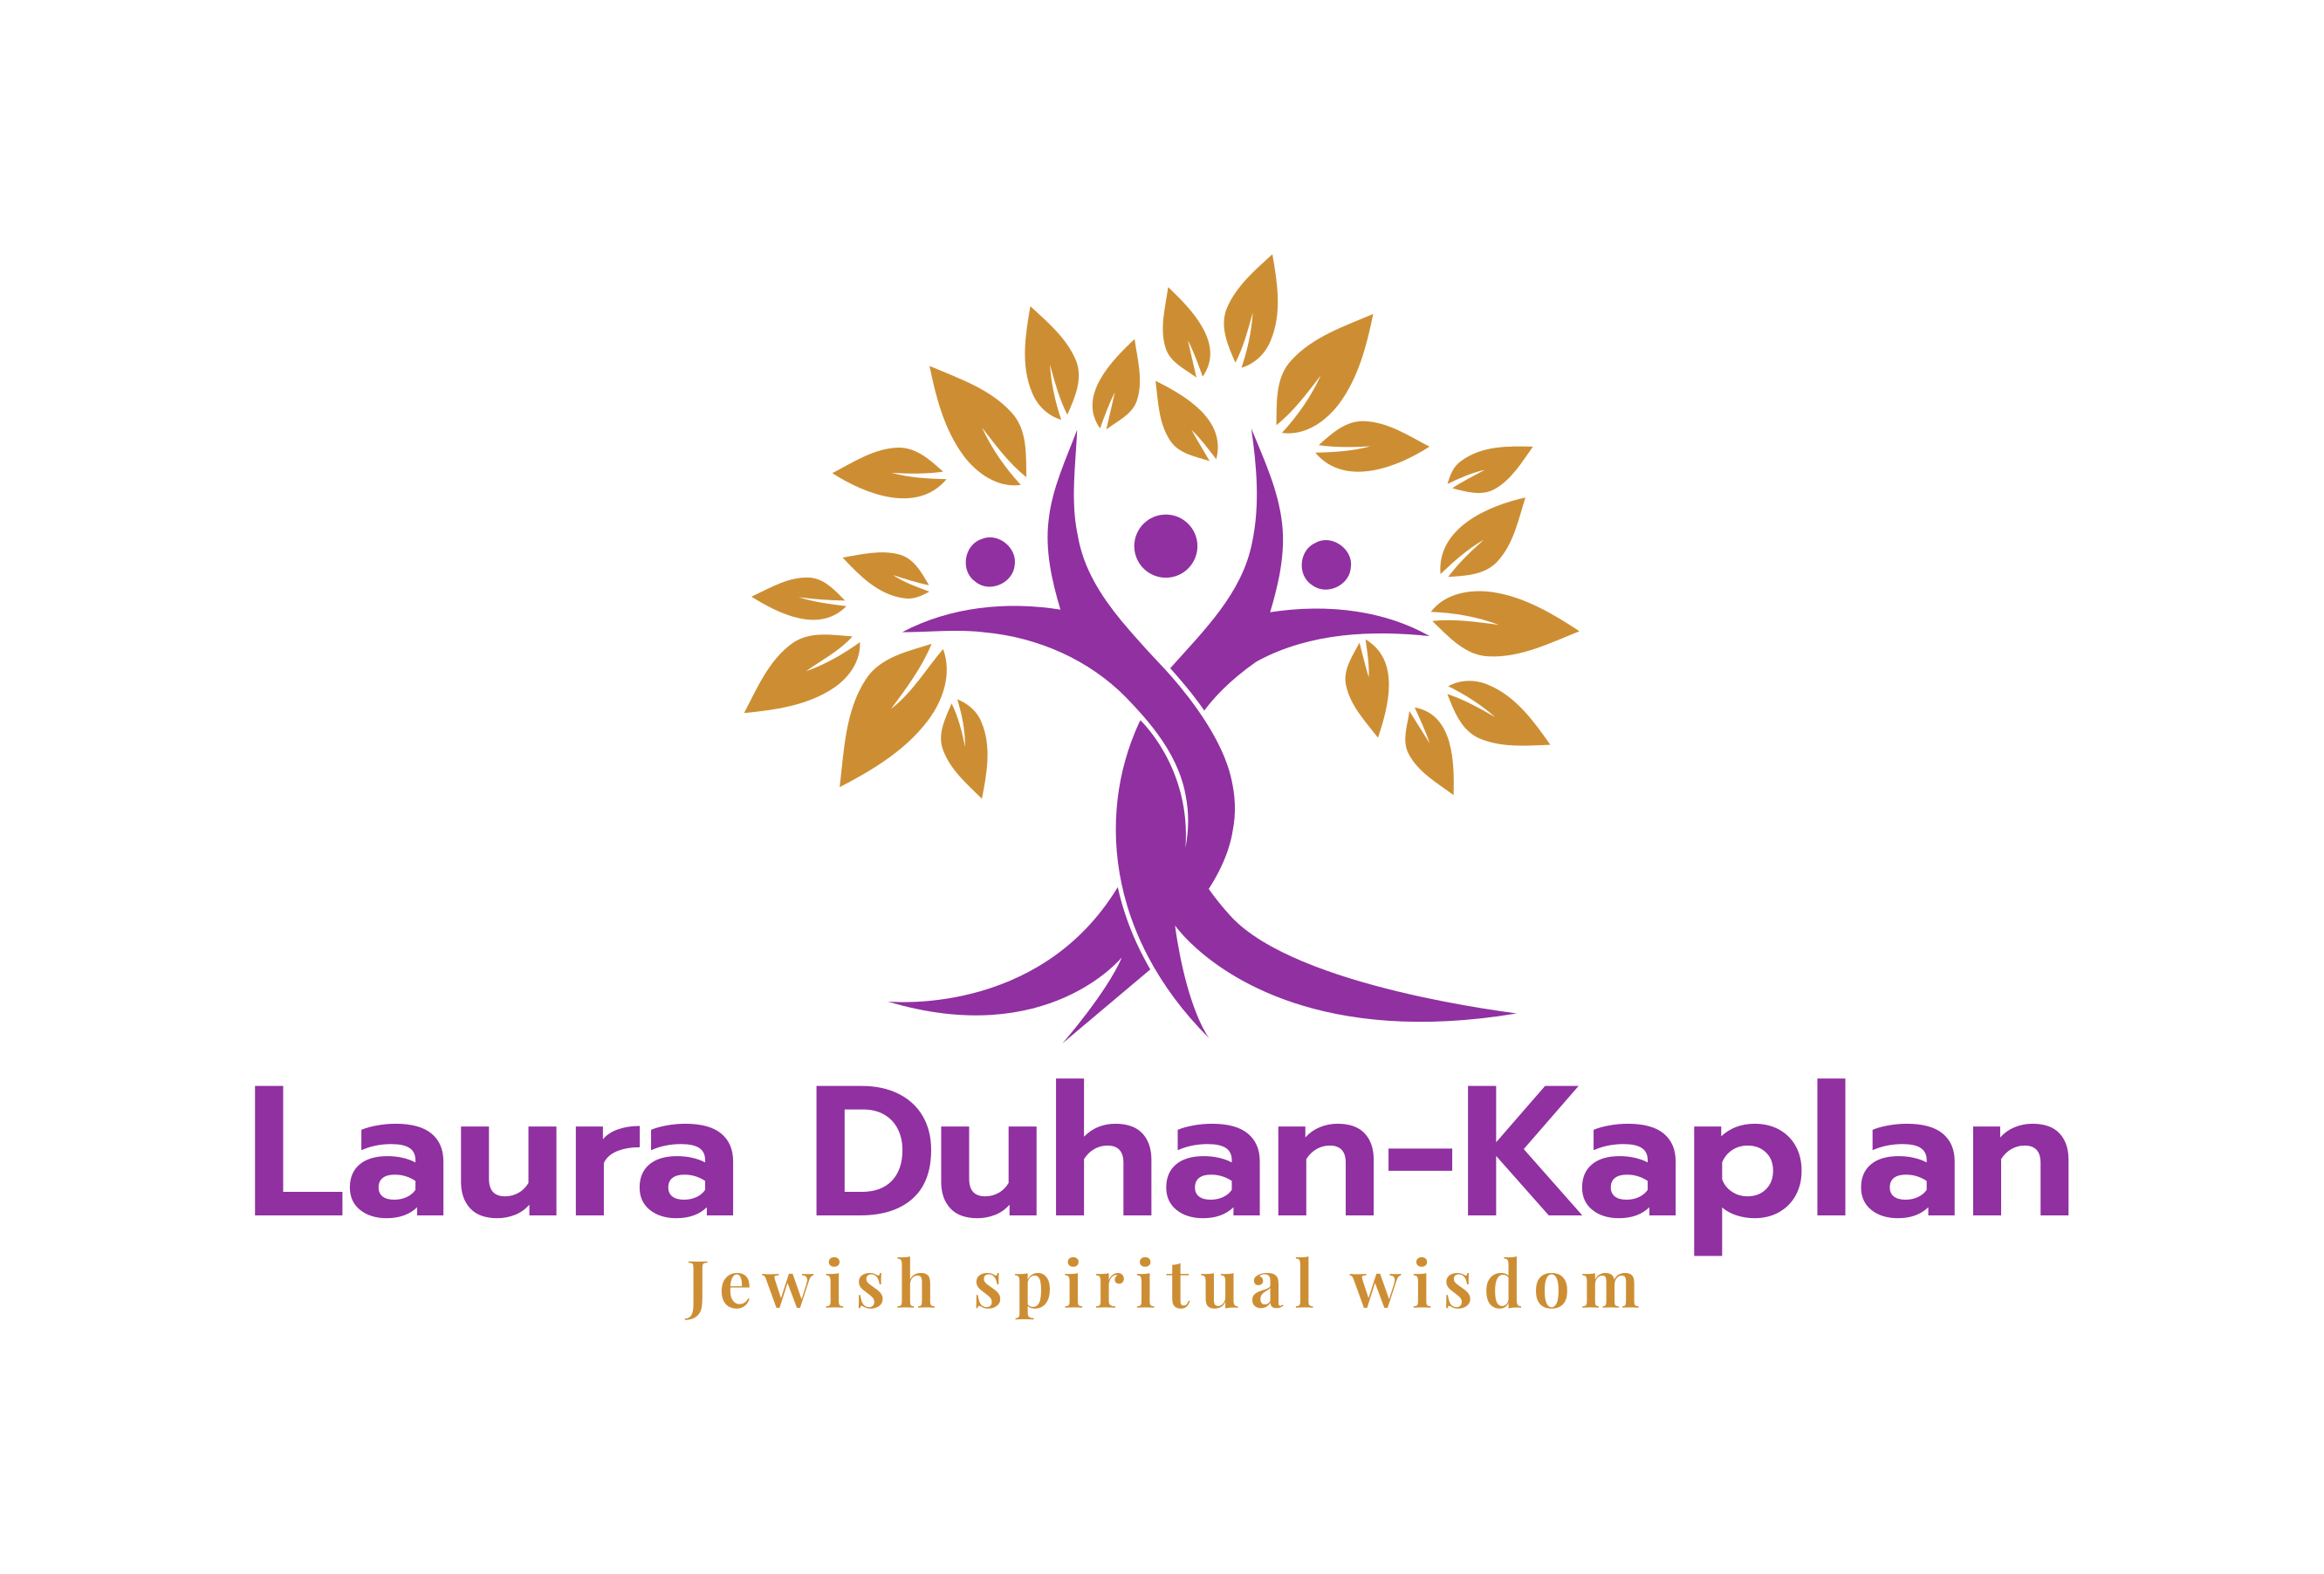 Rabbi Laura Duhan-Kaplan